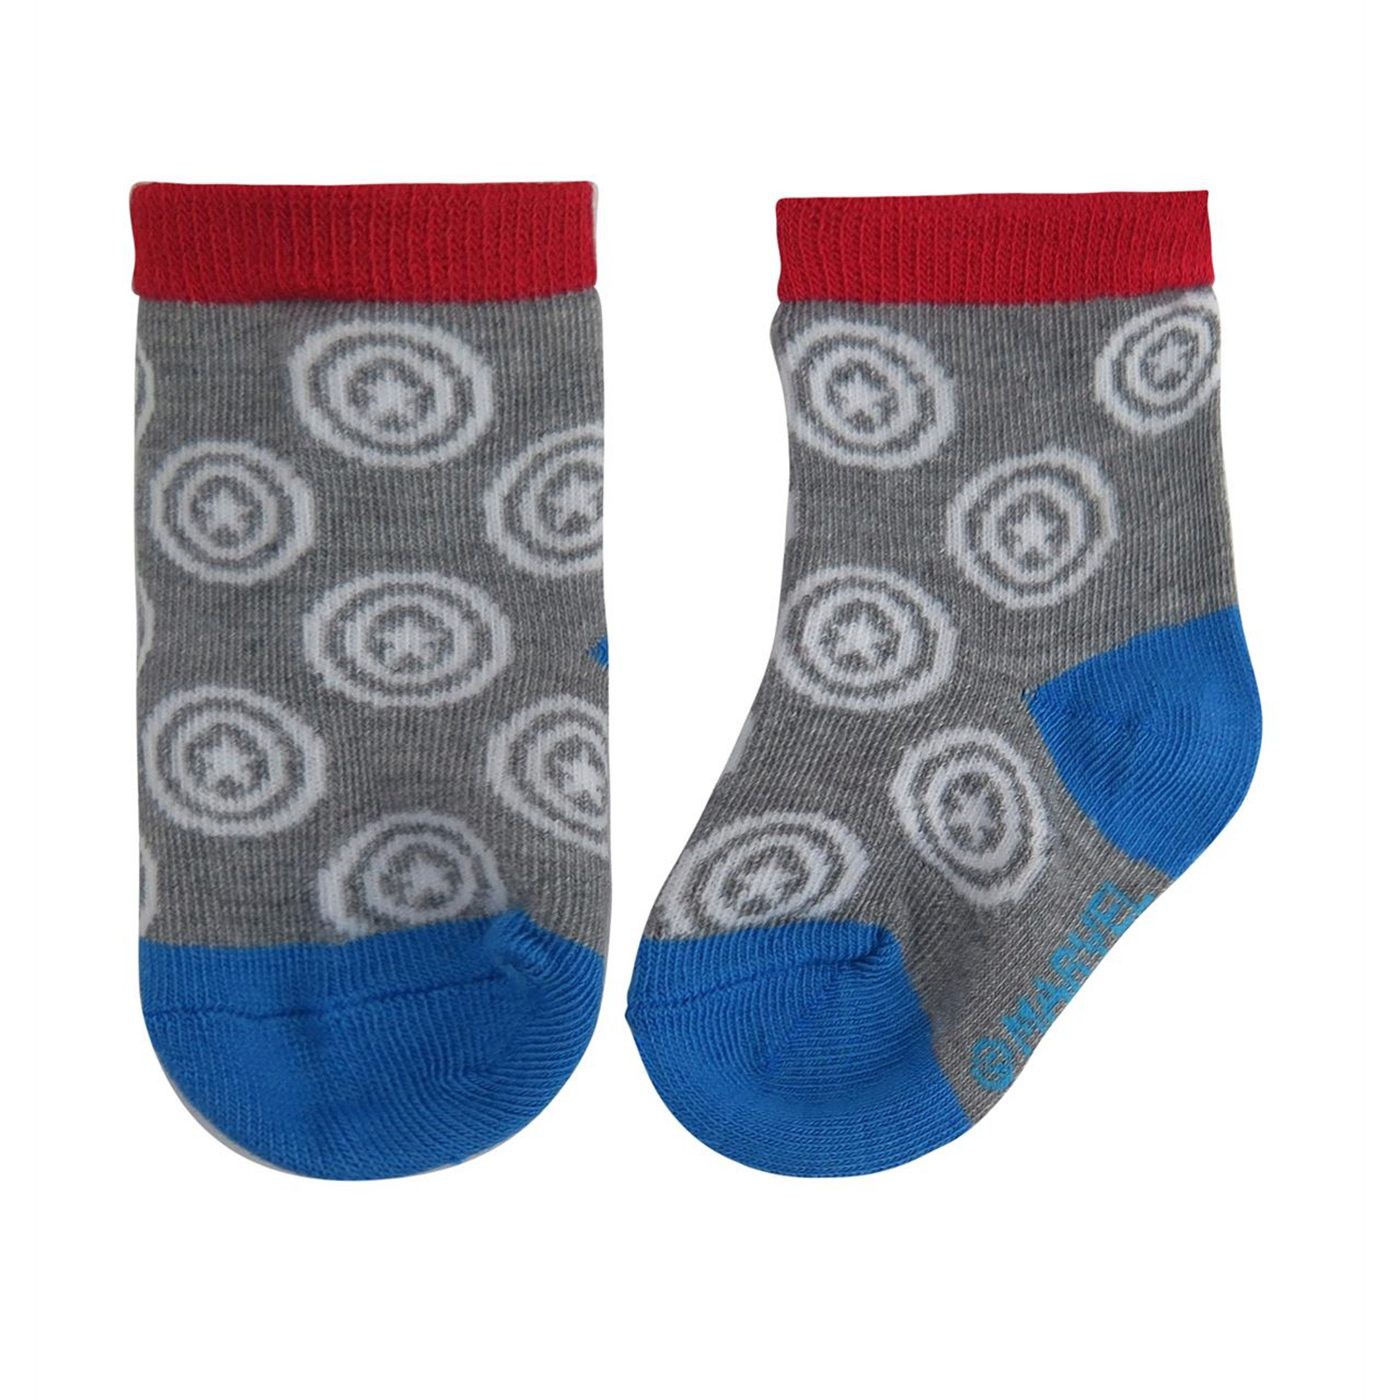 Captain America Hero Infant Socks 6-Pack